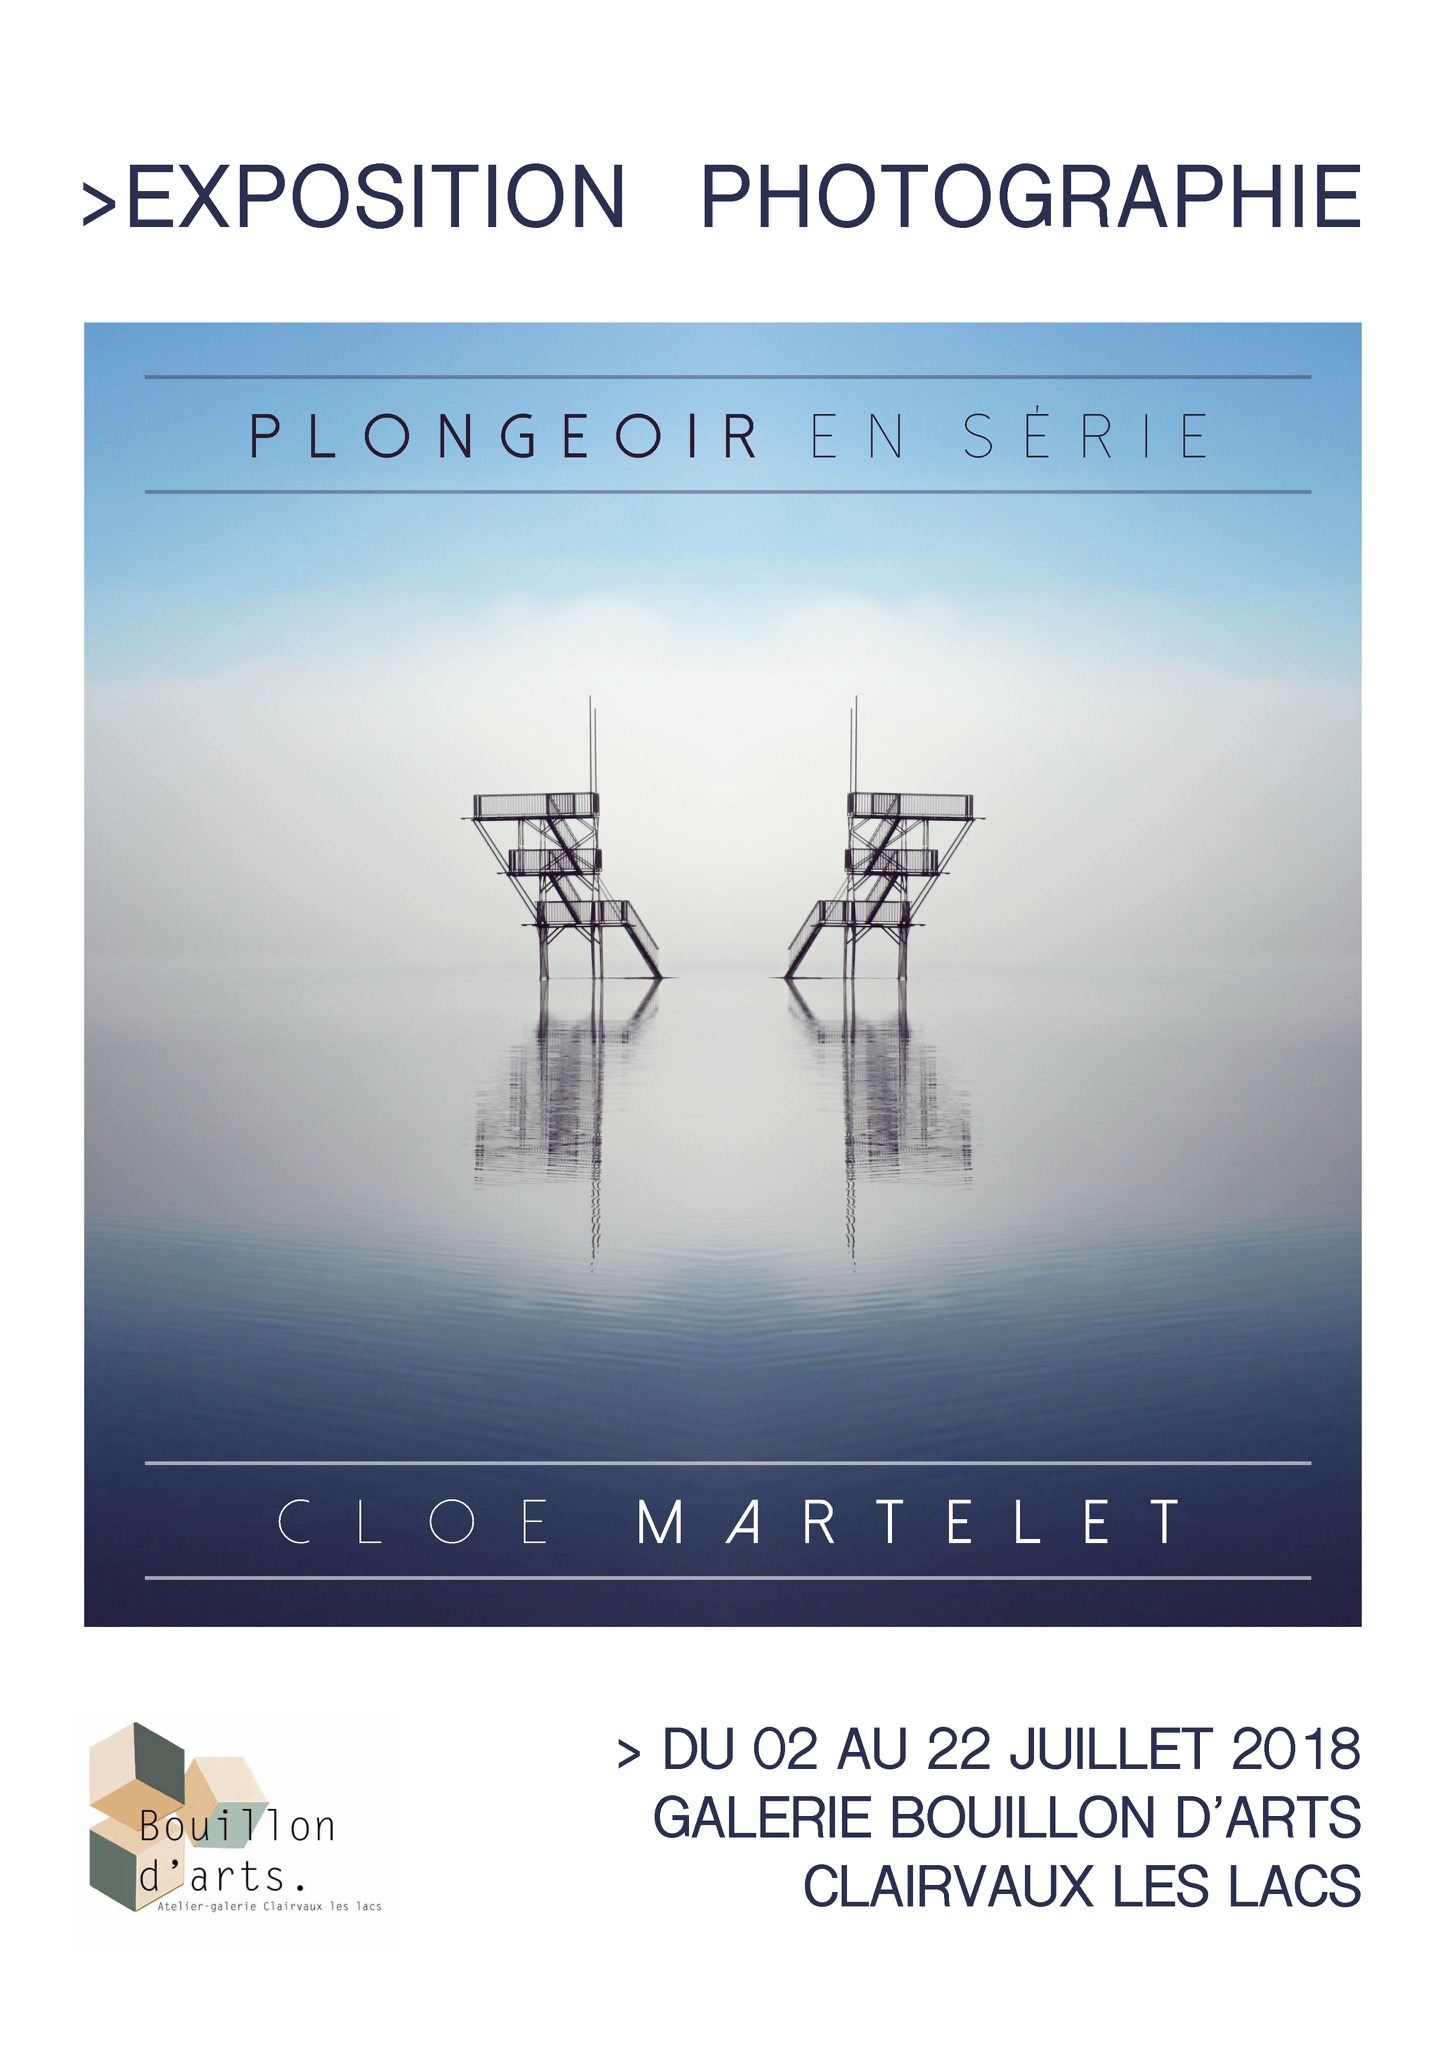 Exposition photo Plongeoir en série de Cloé Martelet Affiche atelier-galerie Bouillon d'arts Clairvaux les lacs